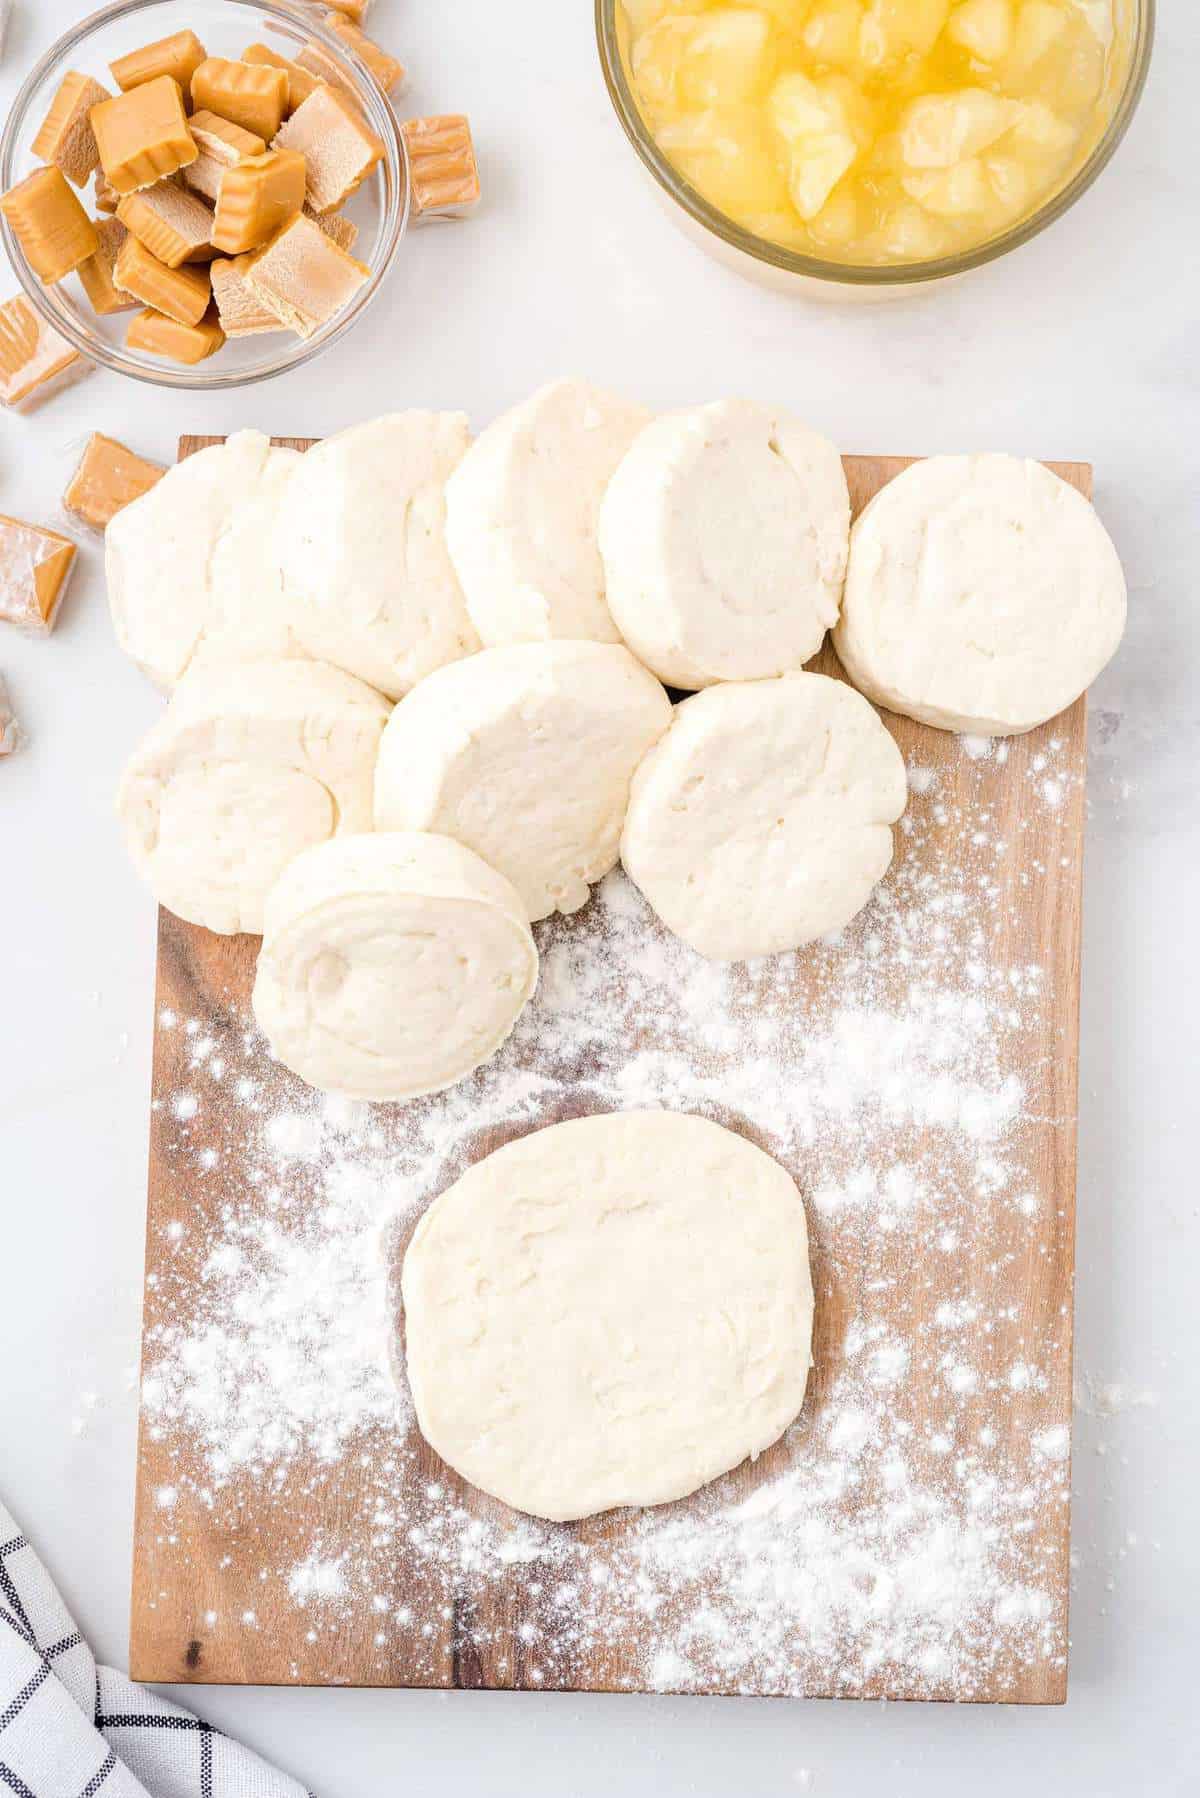 flatten the dough